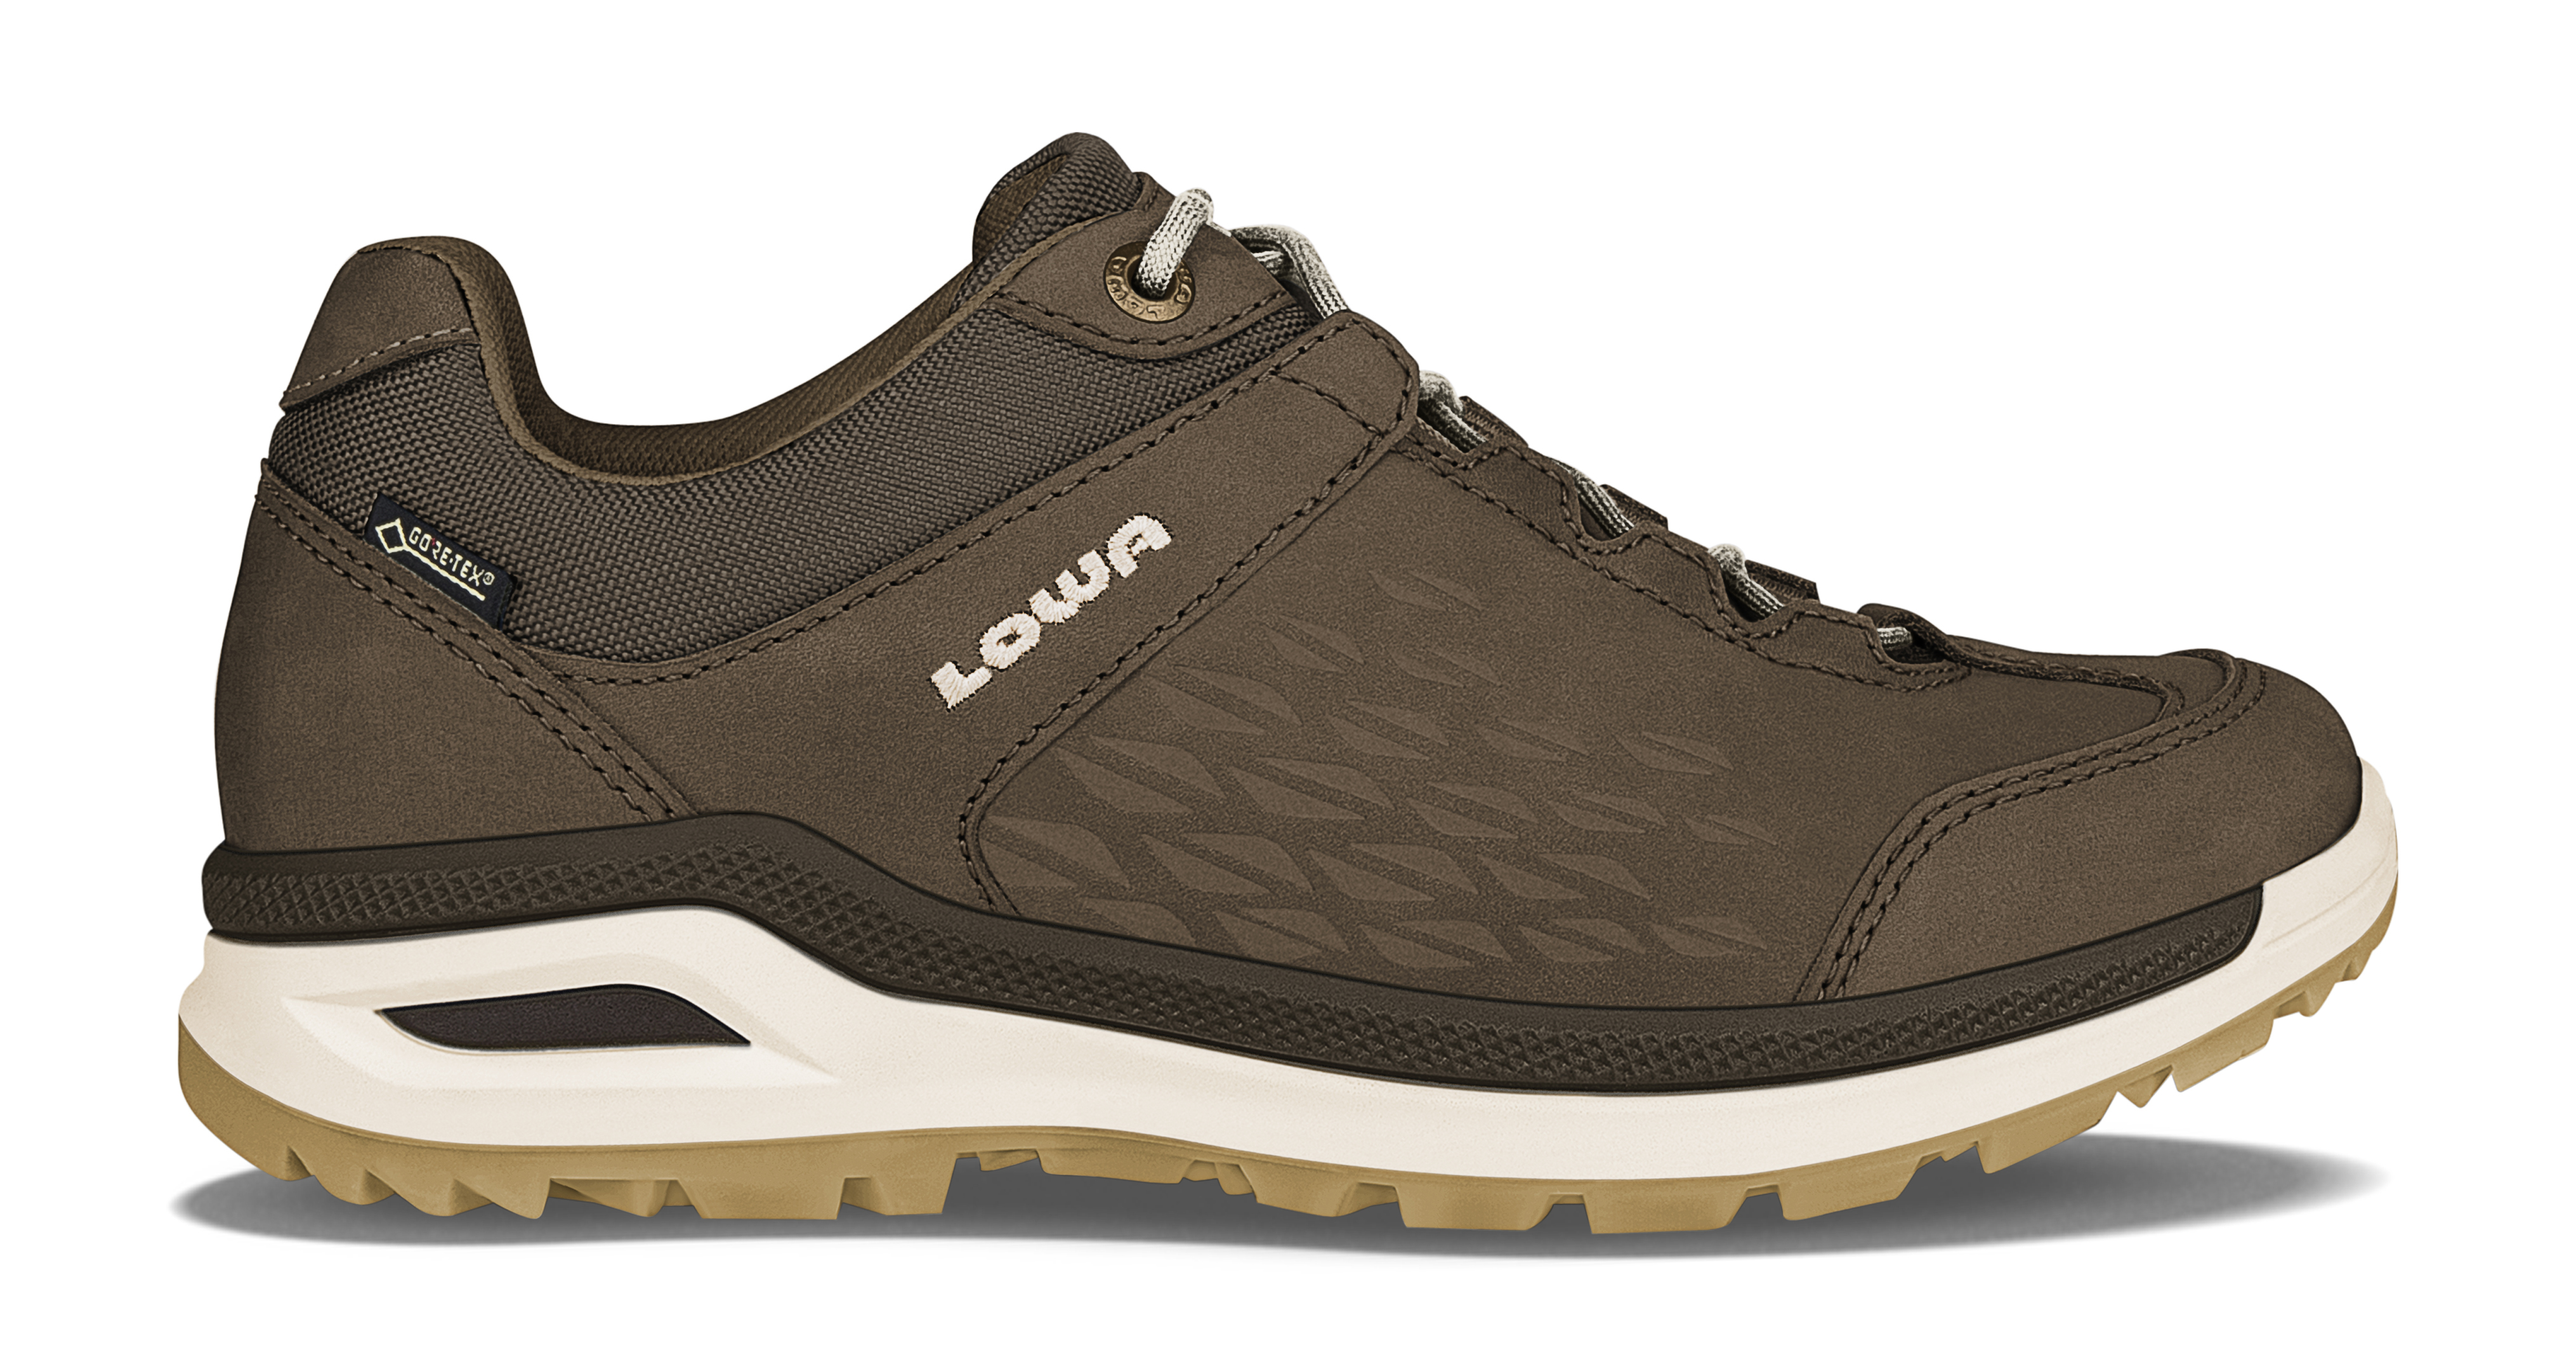 lowa locarno gtx qc hiking boots